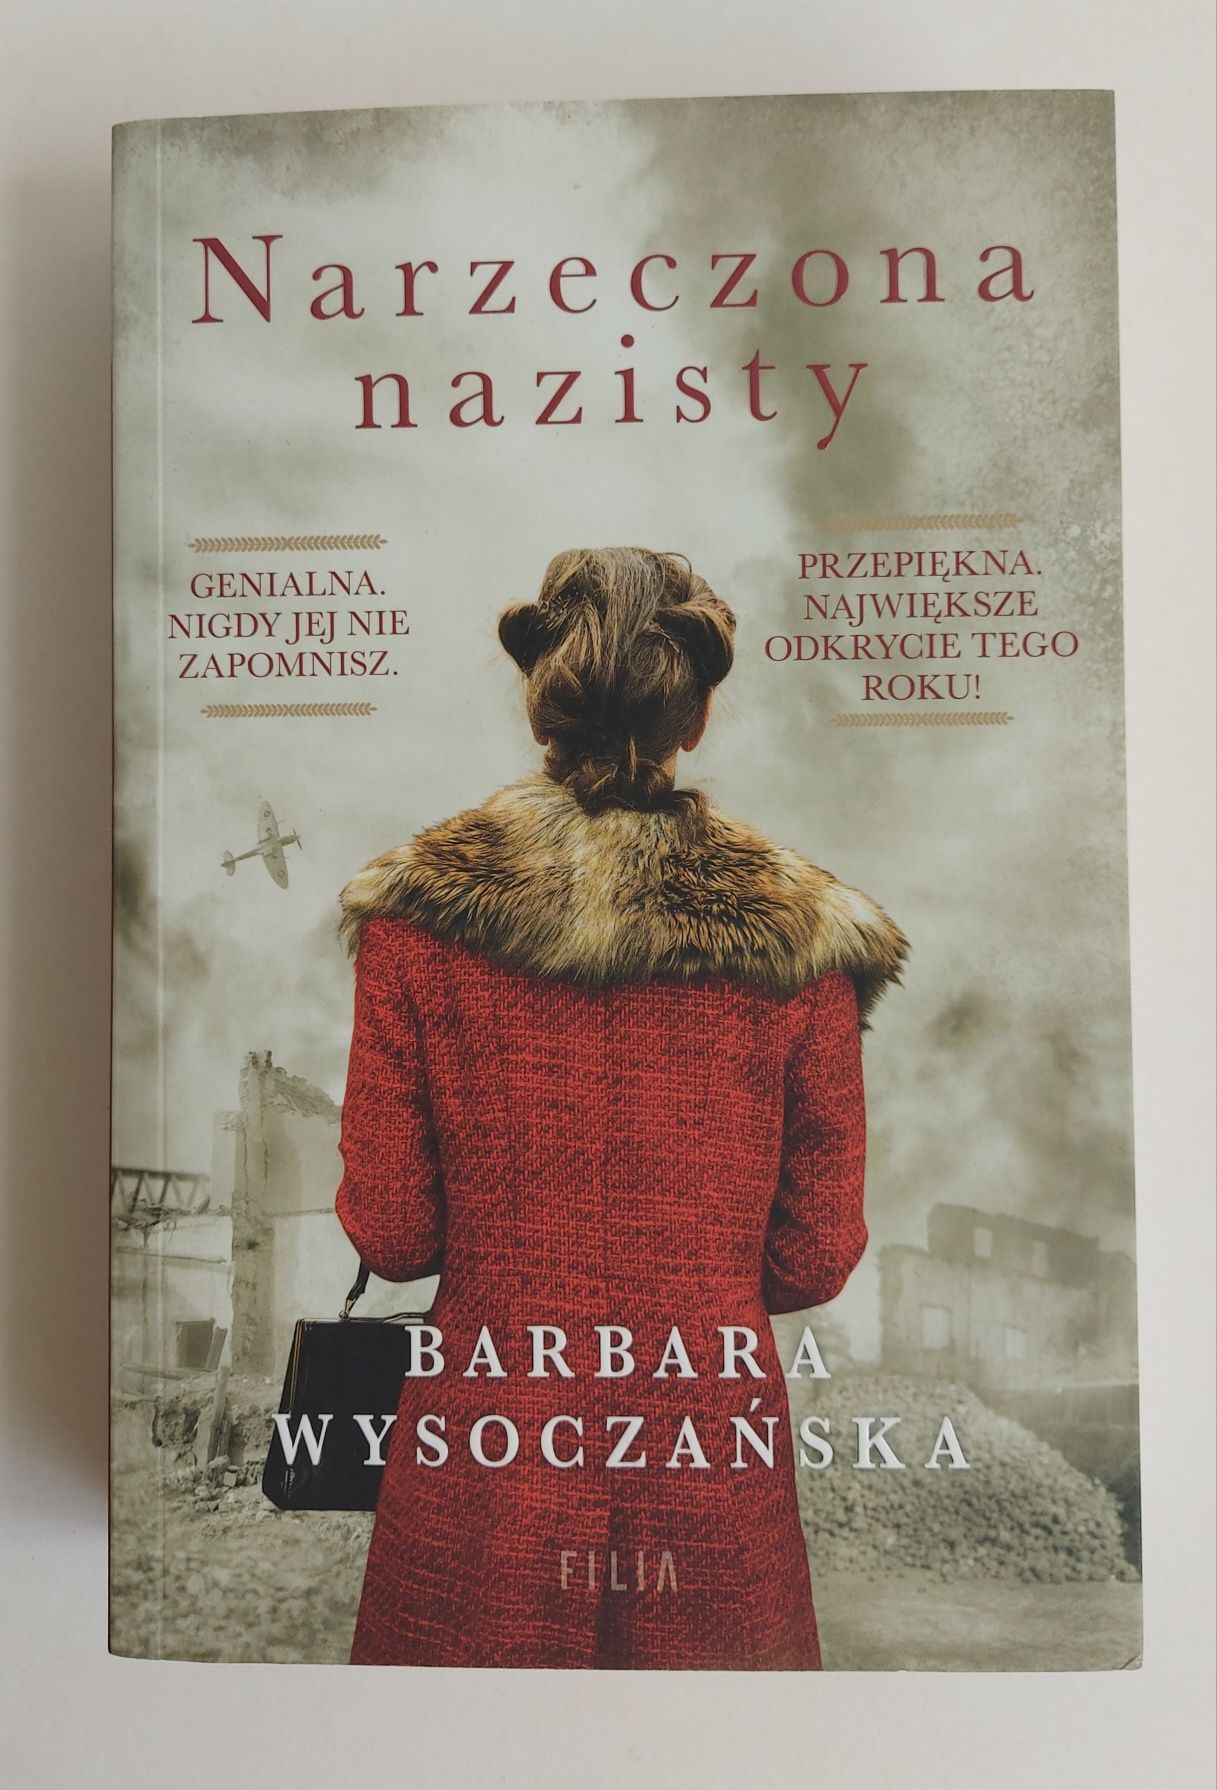 Barbara Boczarska "Narzeczona nazisty"